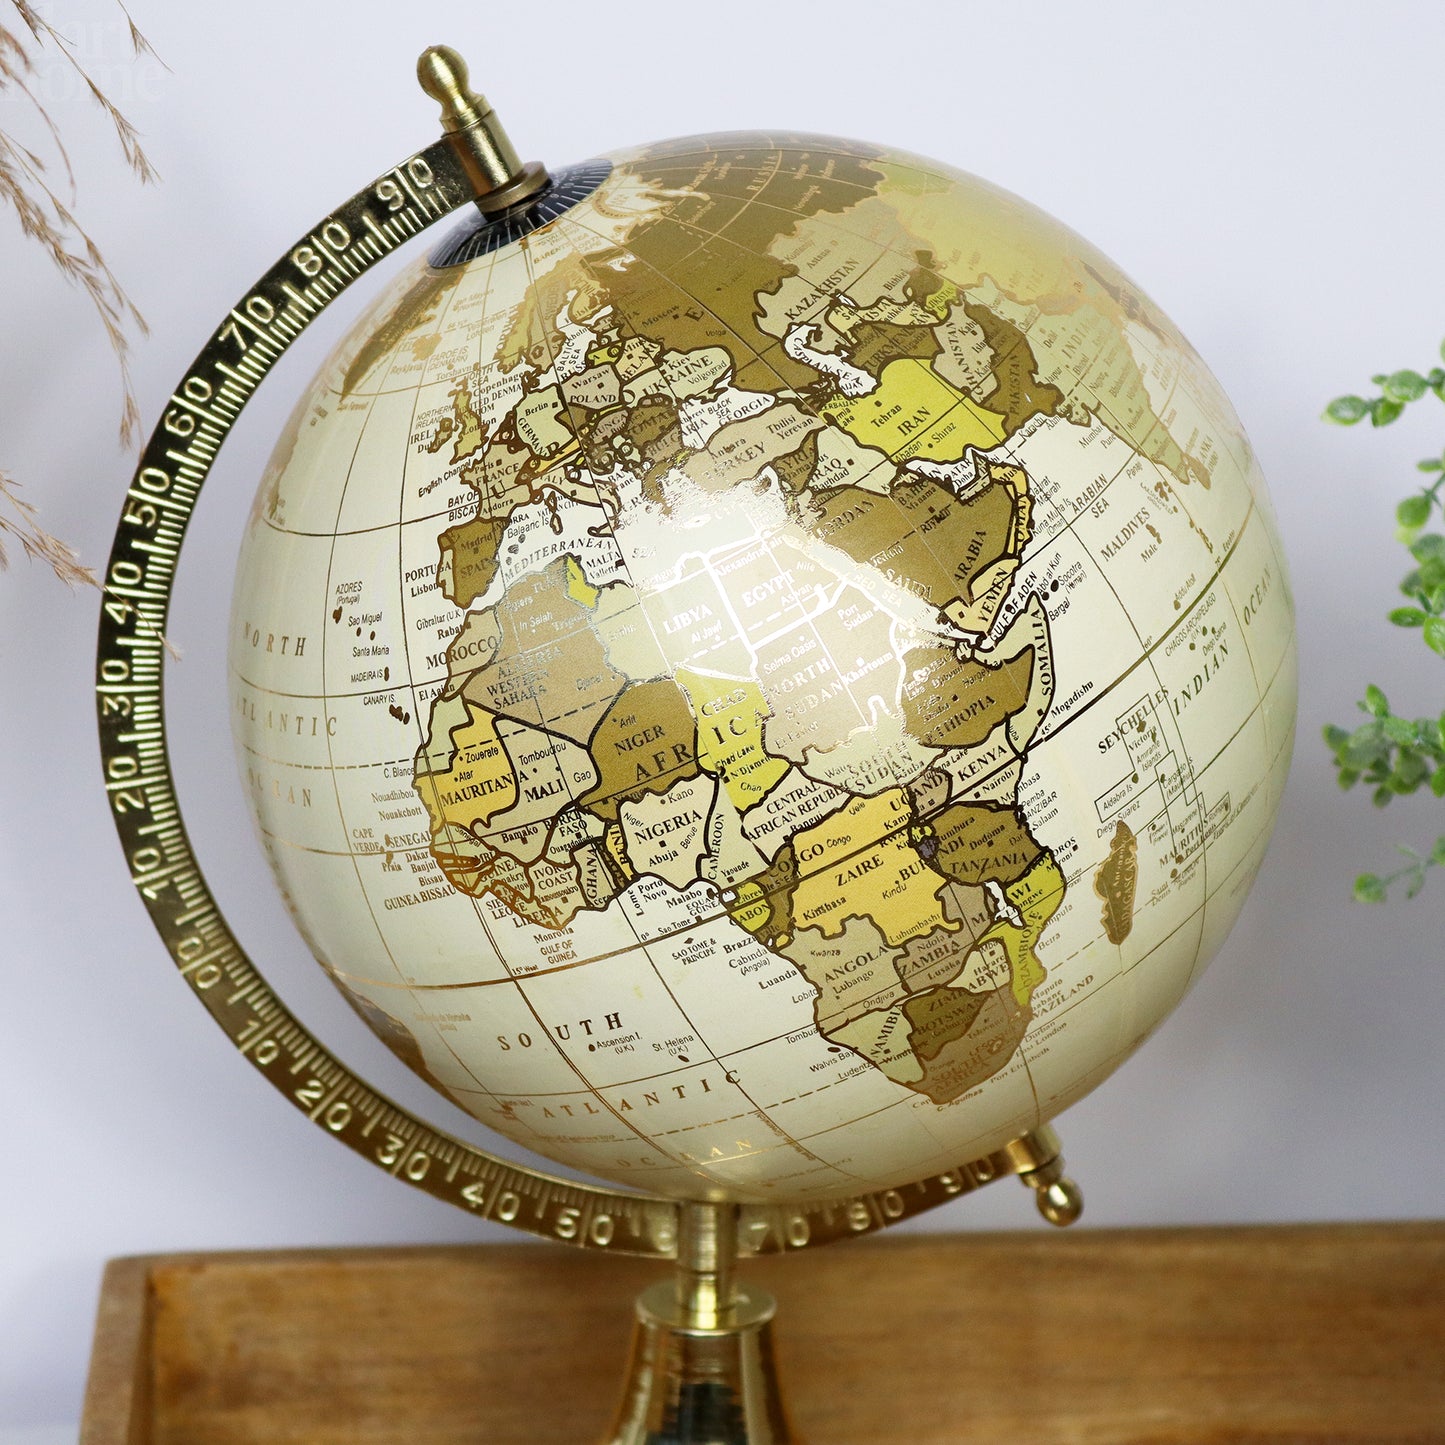 Cremefarbenes und goldenes Globus-Ornament